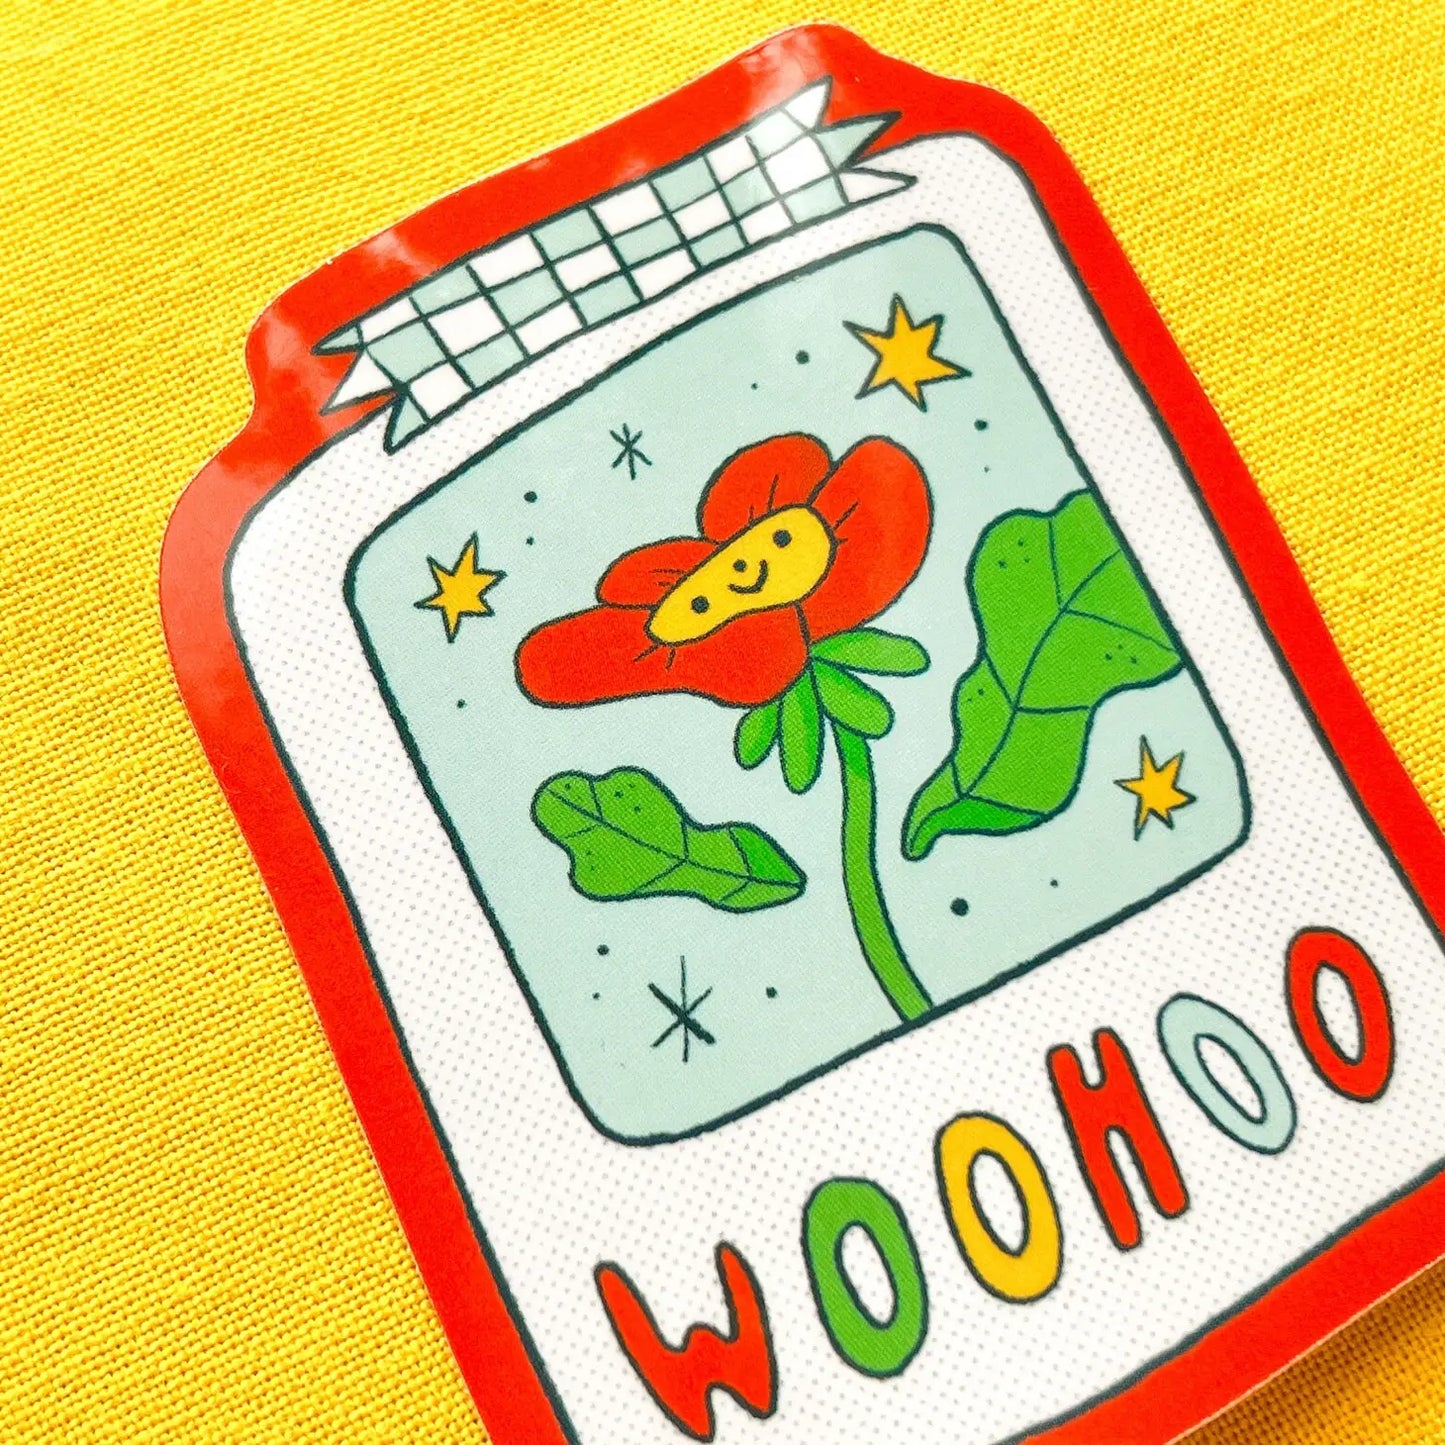 Woohoo Flower Vinyl Sticker